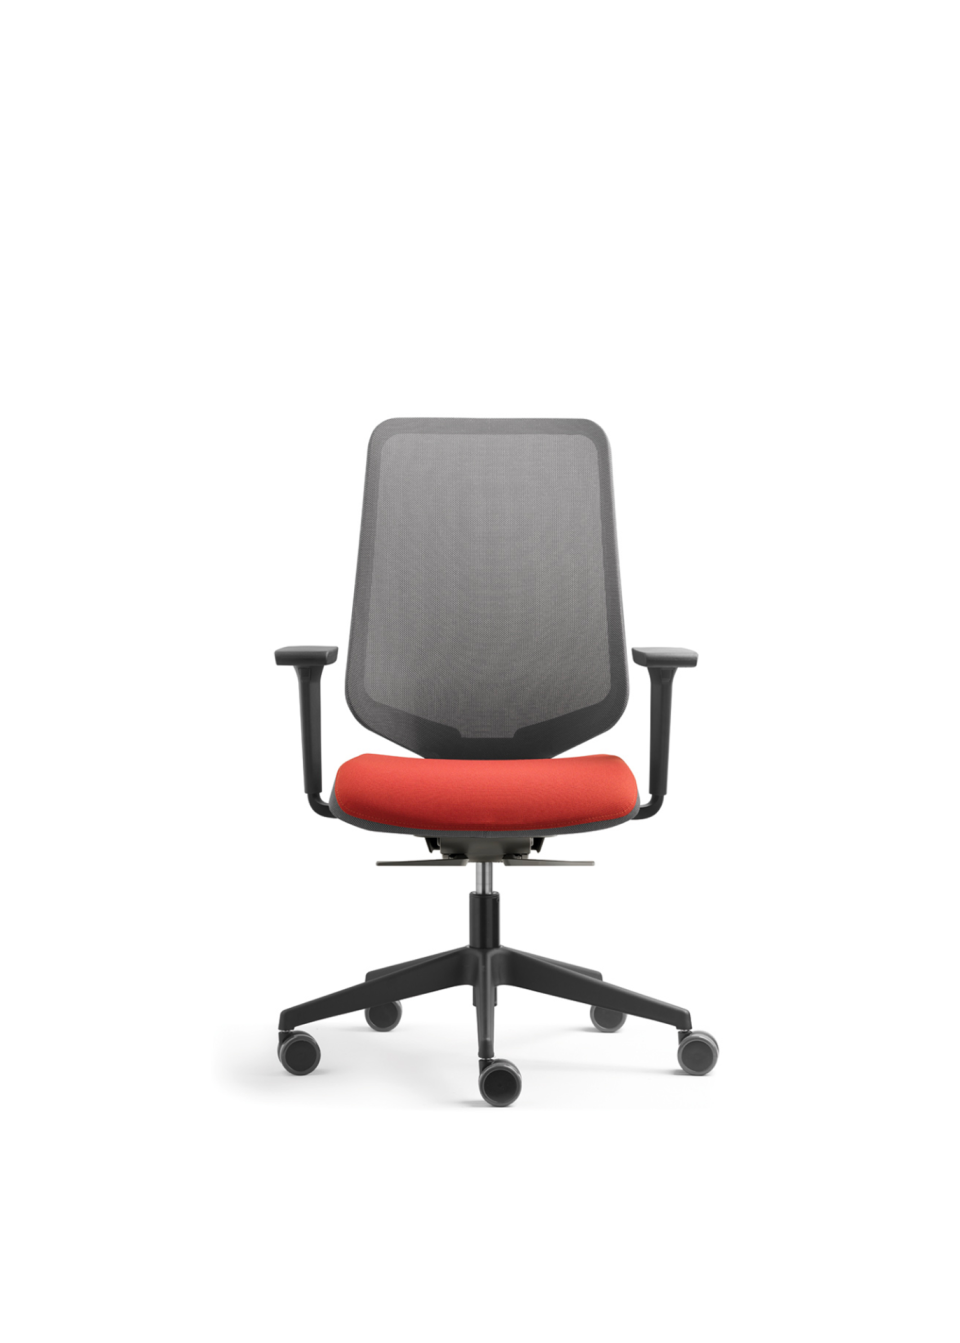 Fauteuil de bureau ergonomique usage intensif, chaise ergonomique de bureau réglable en hauteur dossier résille